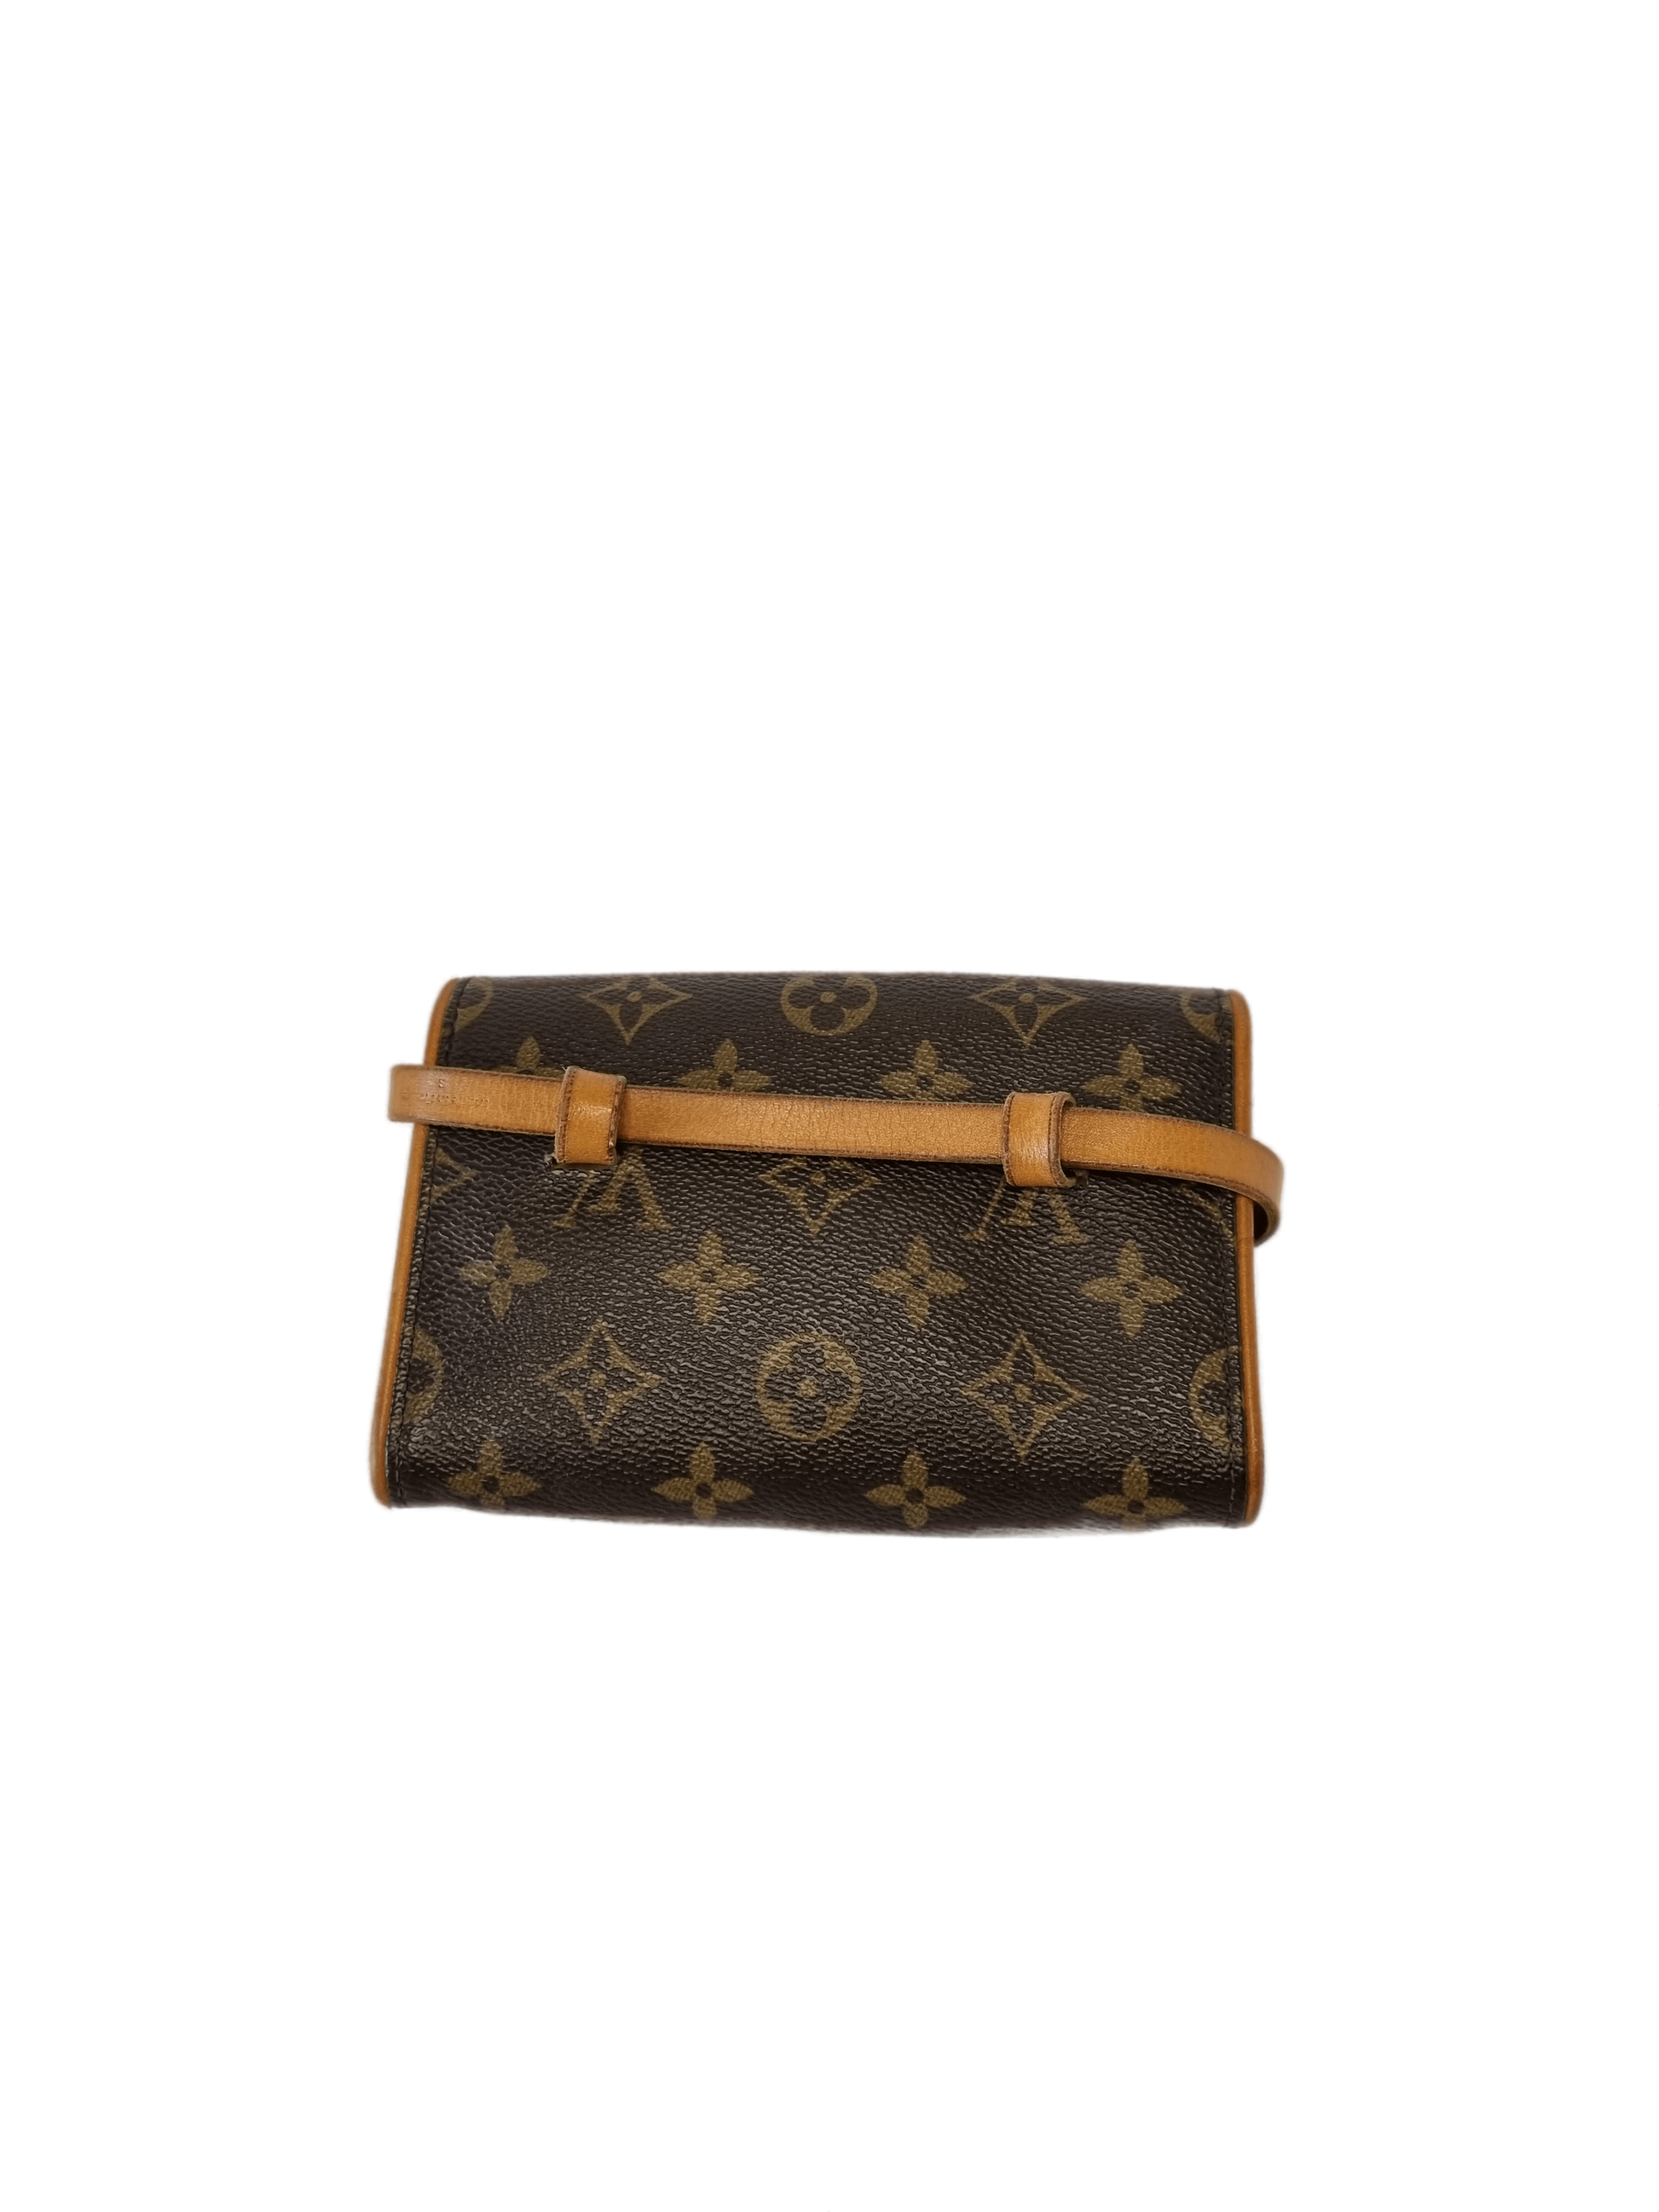 Louis Vuitton belt bag